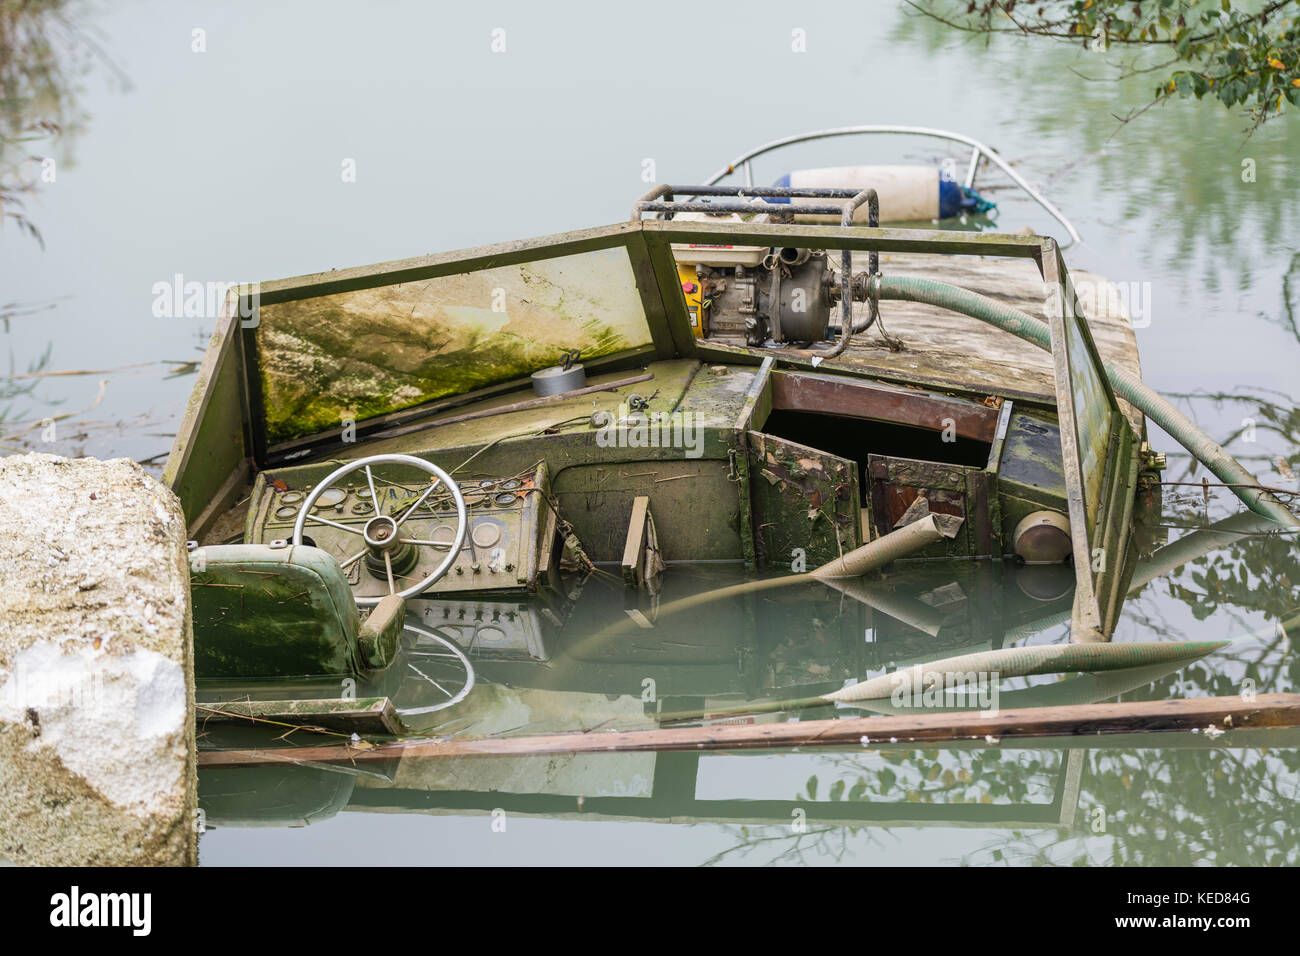 Un petit plaisir bateau abandonné et naufrage sur une rivière au Royaume-Uni. Banque D'Images